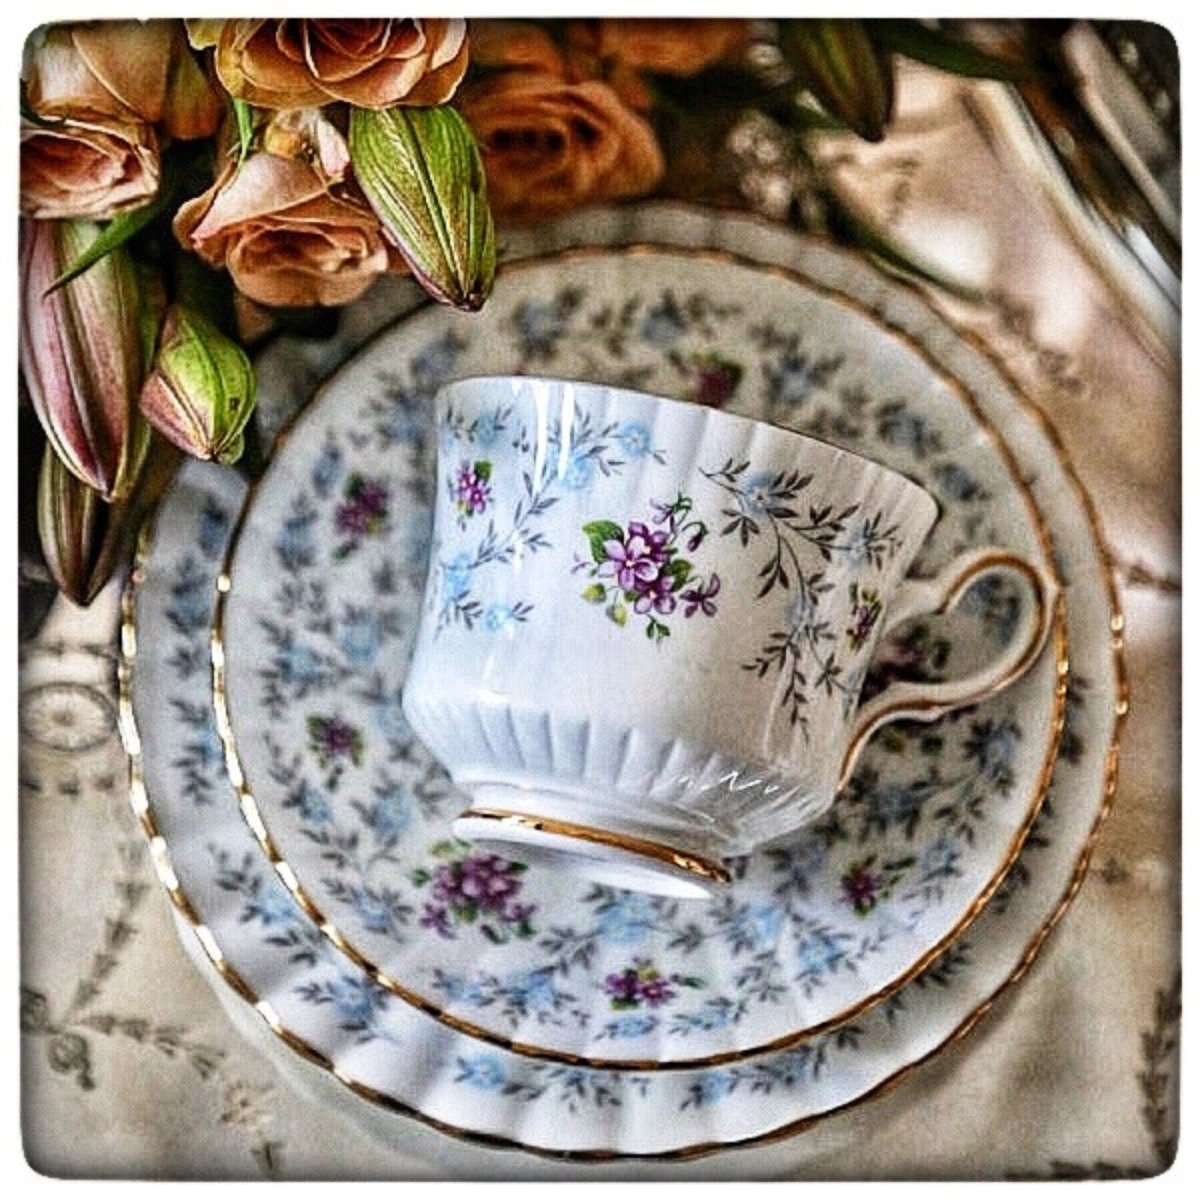 Royal Stafford | Enchanting | tea trio set | violets & forget me nots - Chinamania.shop